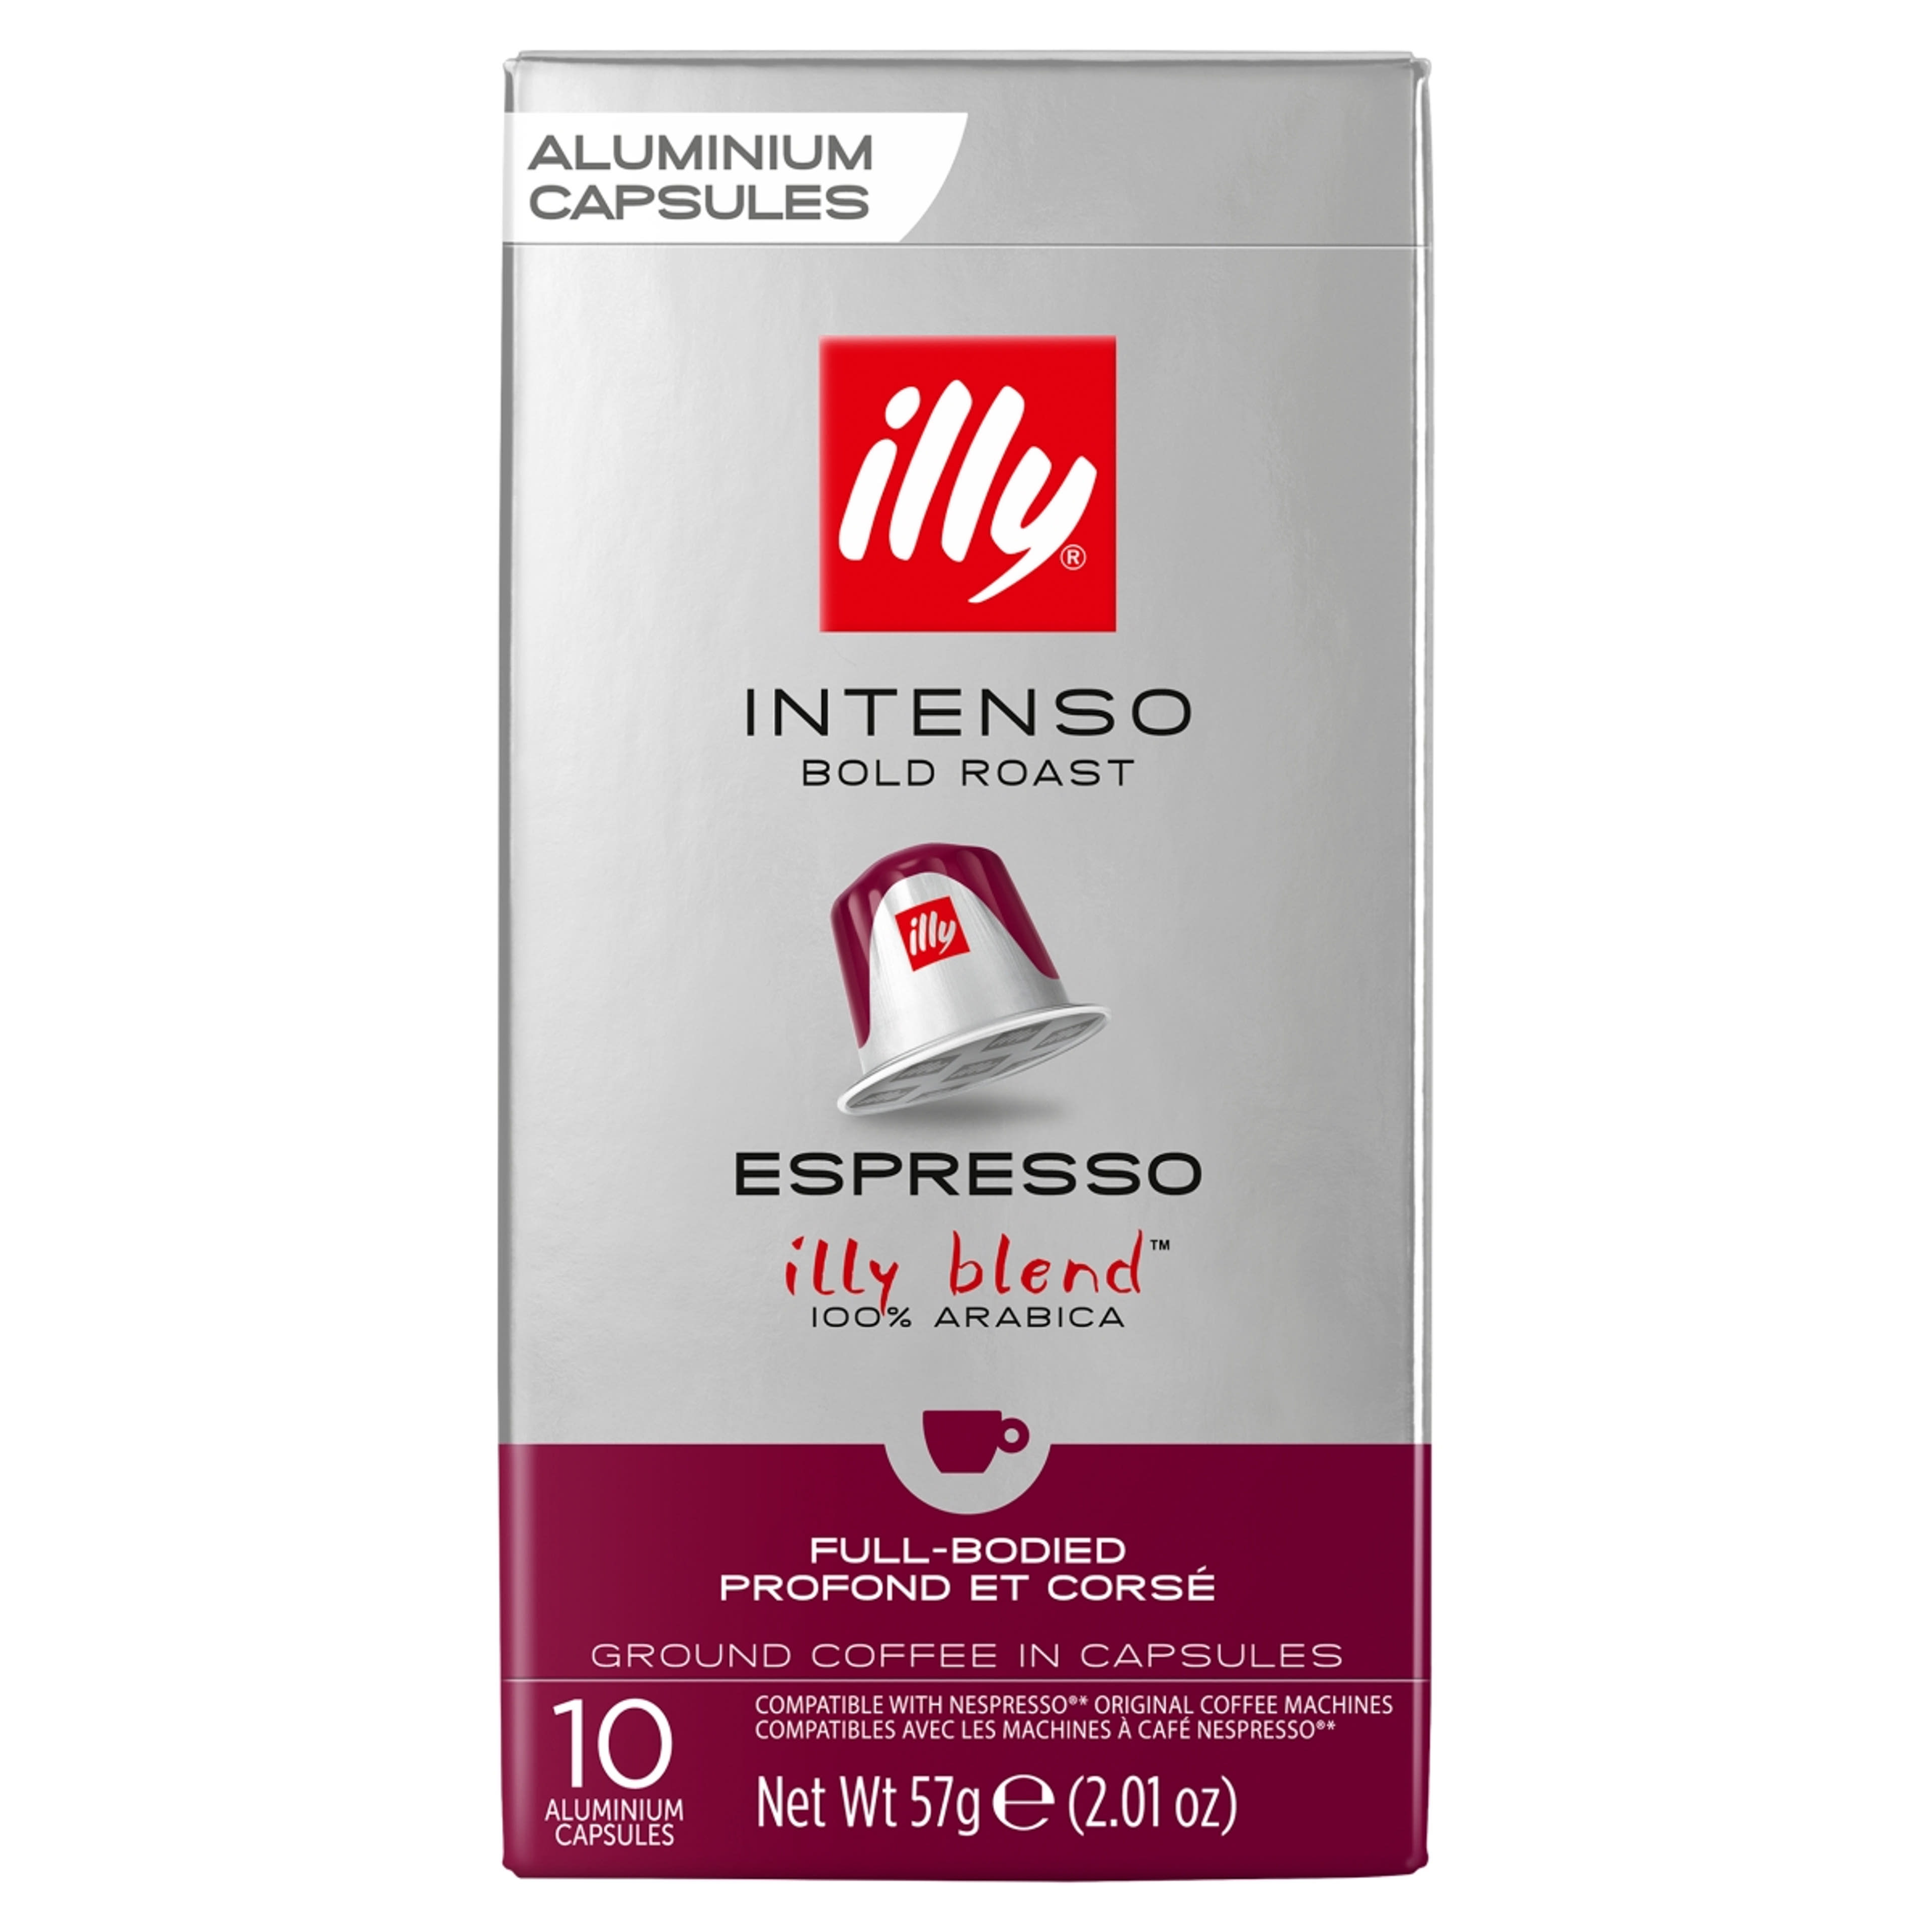 Illy ncc espresso intenso kapszula - 10 db